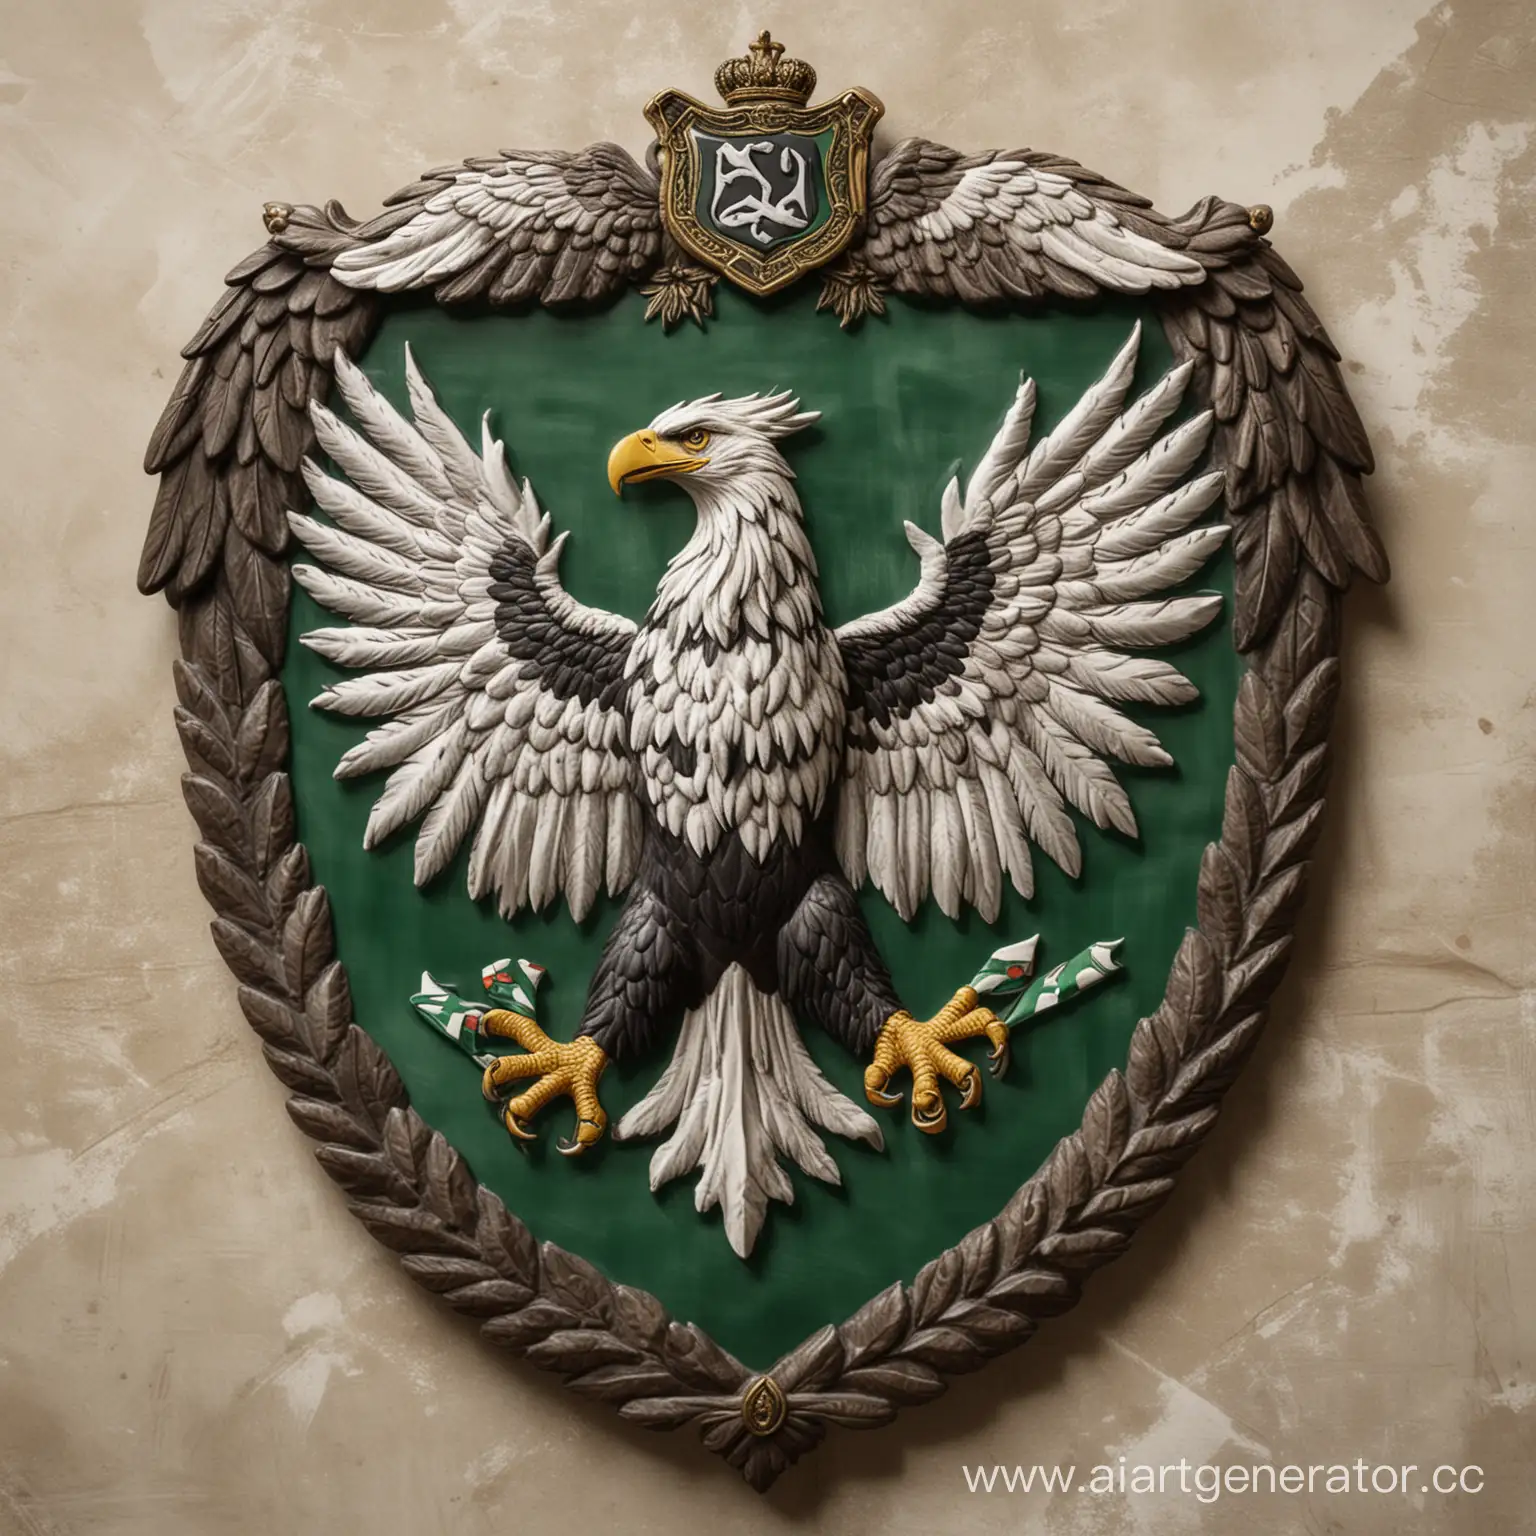 В центре флага расположена эмблема Кавказского Эмирата:

Черный орел с распростертыми крыльями, символизирующий силу и независимость.
Зеленый щит на груди орла, на котором изображены три белые горы, символизирующие Кавказский регион.
Белая надпись на щите "Кавказский Эмират", символизирующая название нации.
